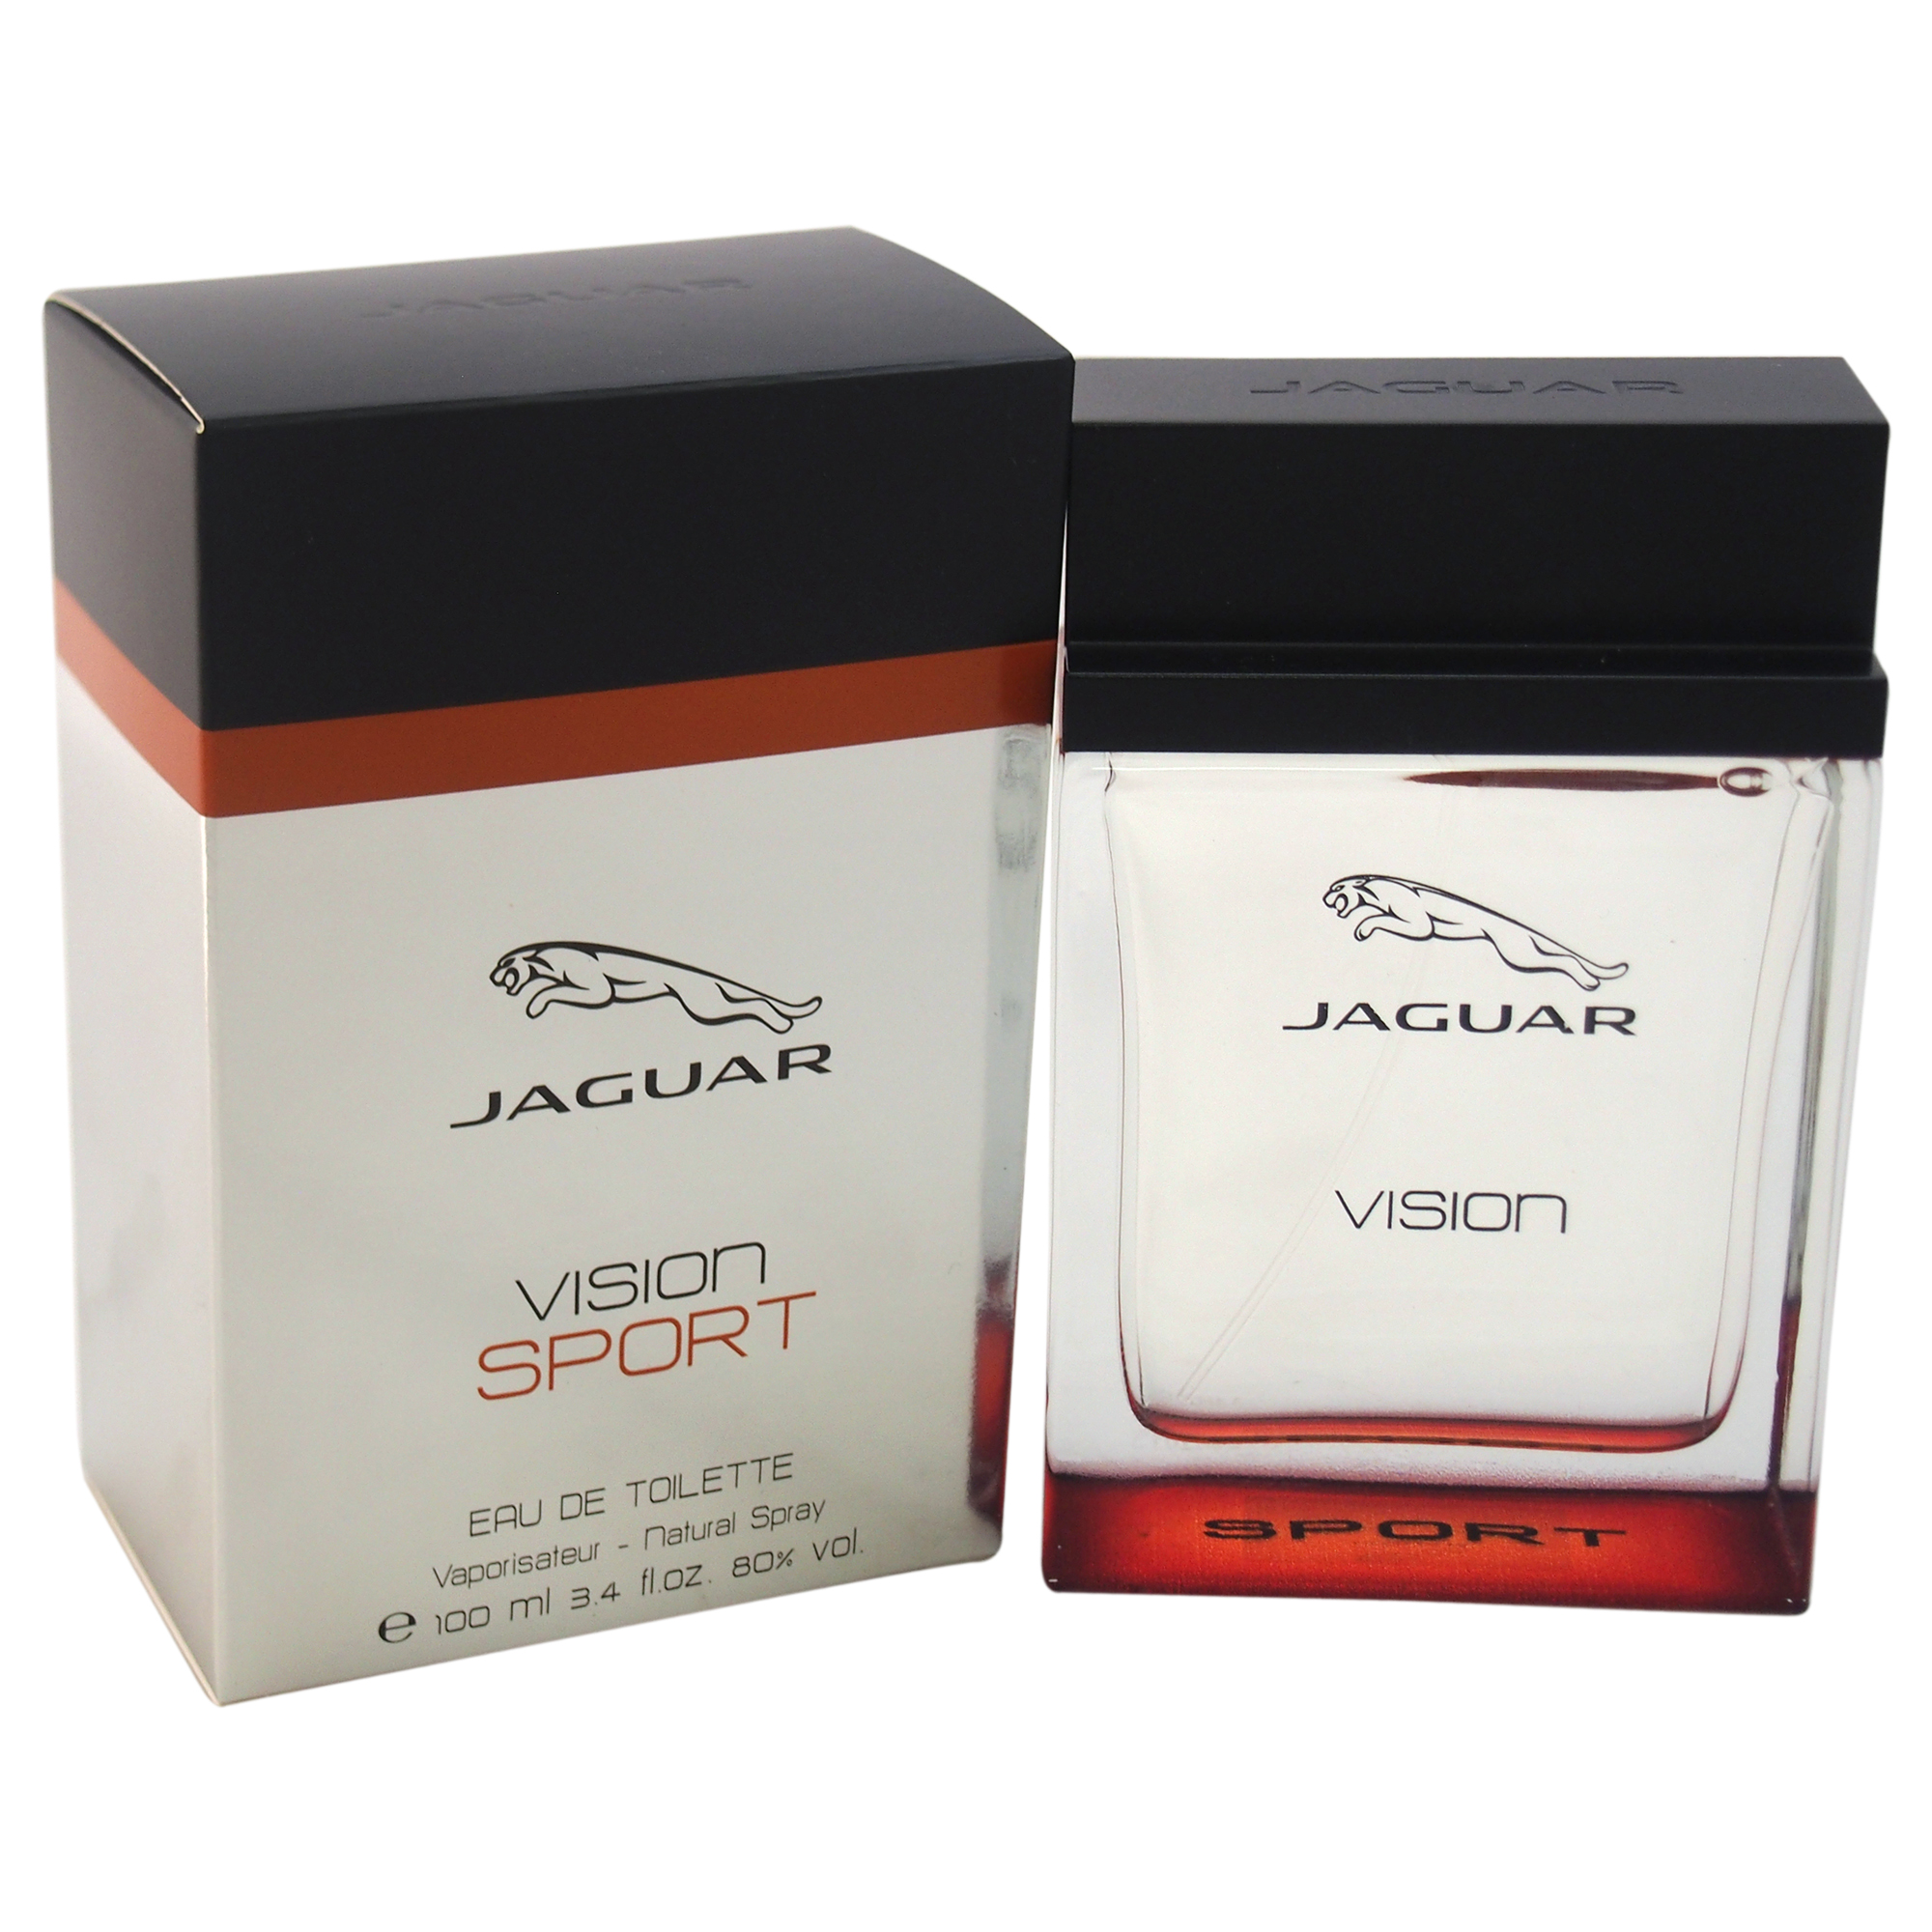 JAGUAR VISION SPORT by Jaguar for Men - 3.4 oz EDT Spray